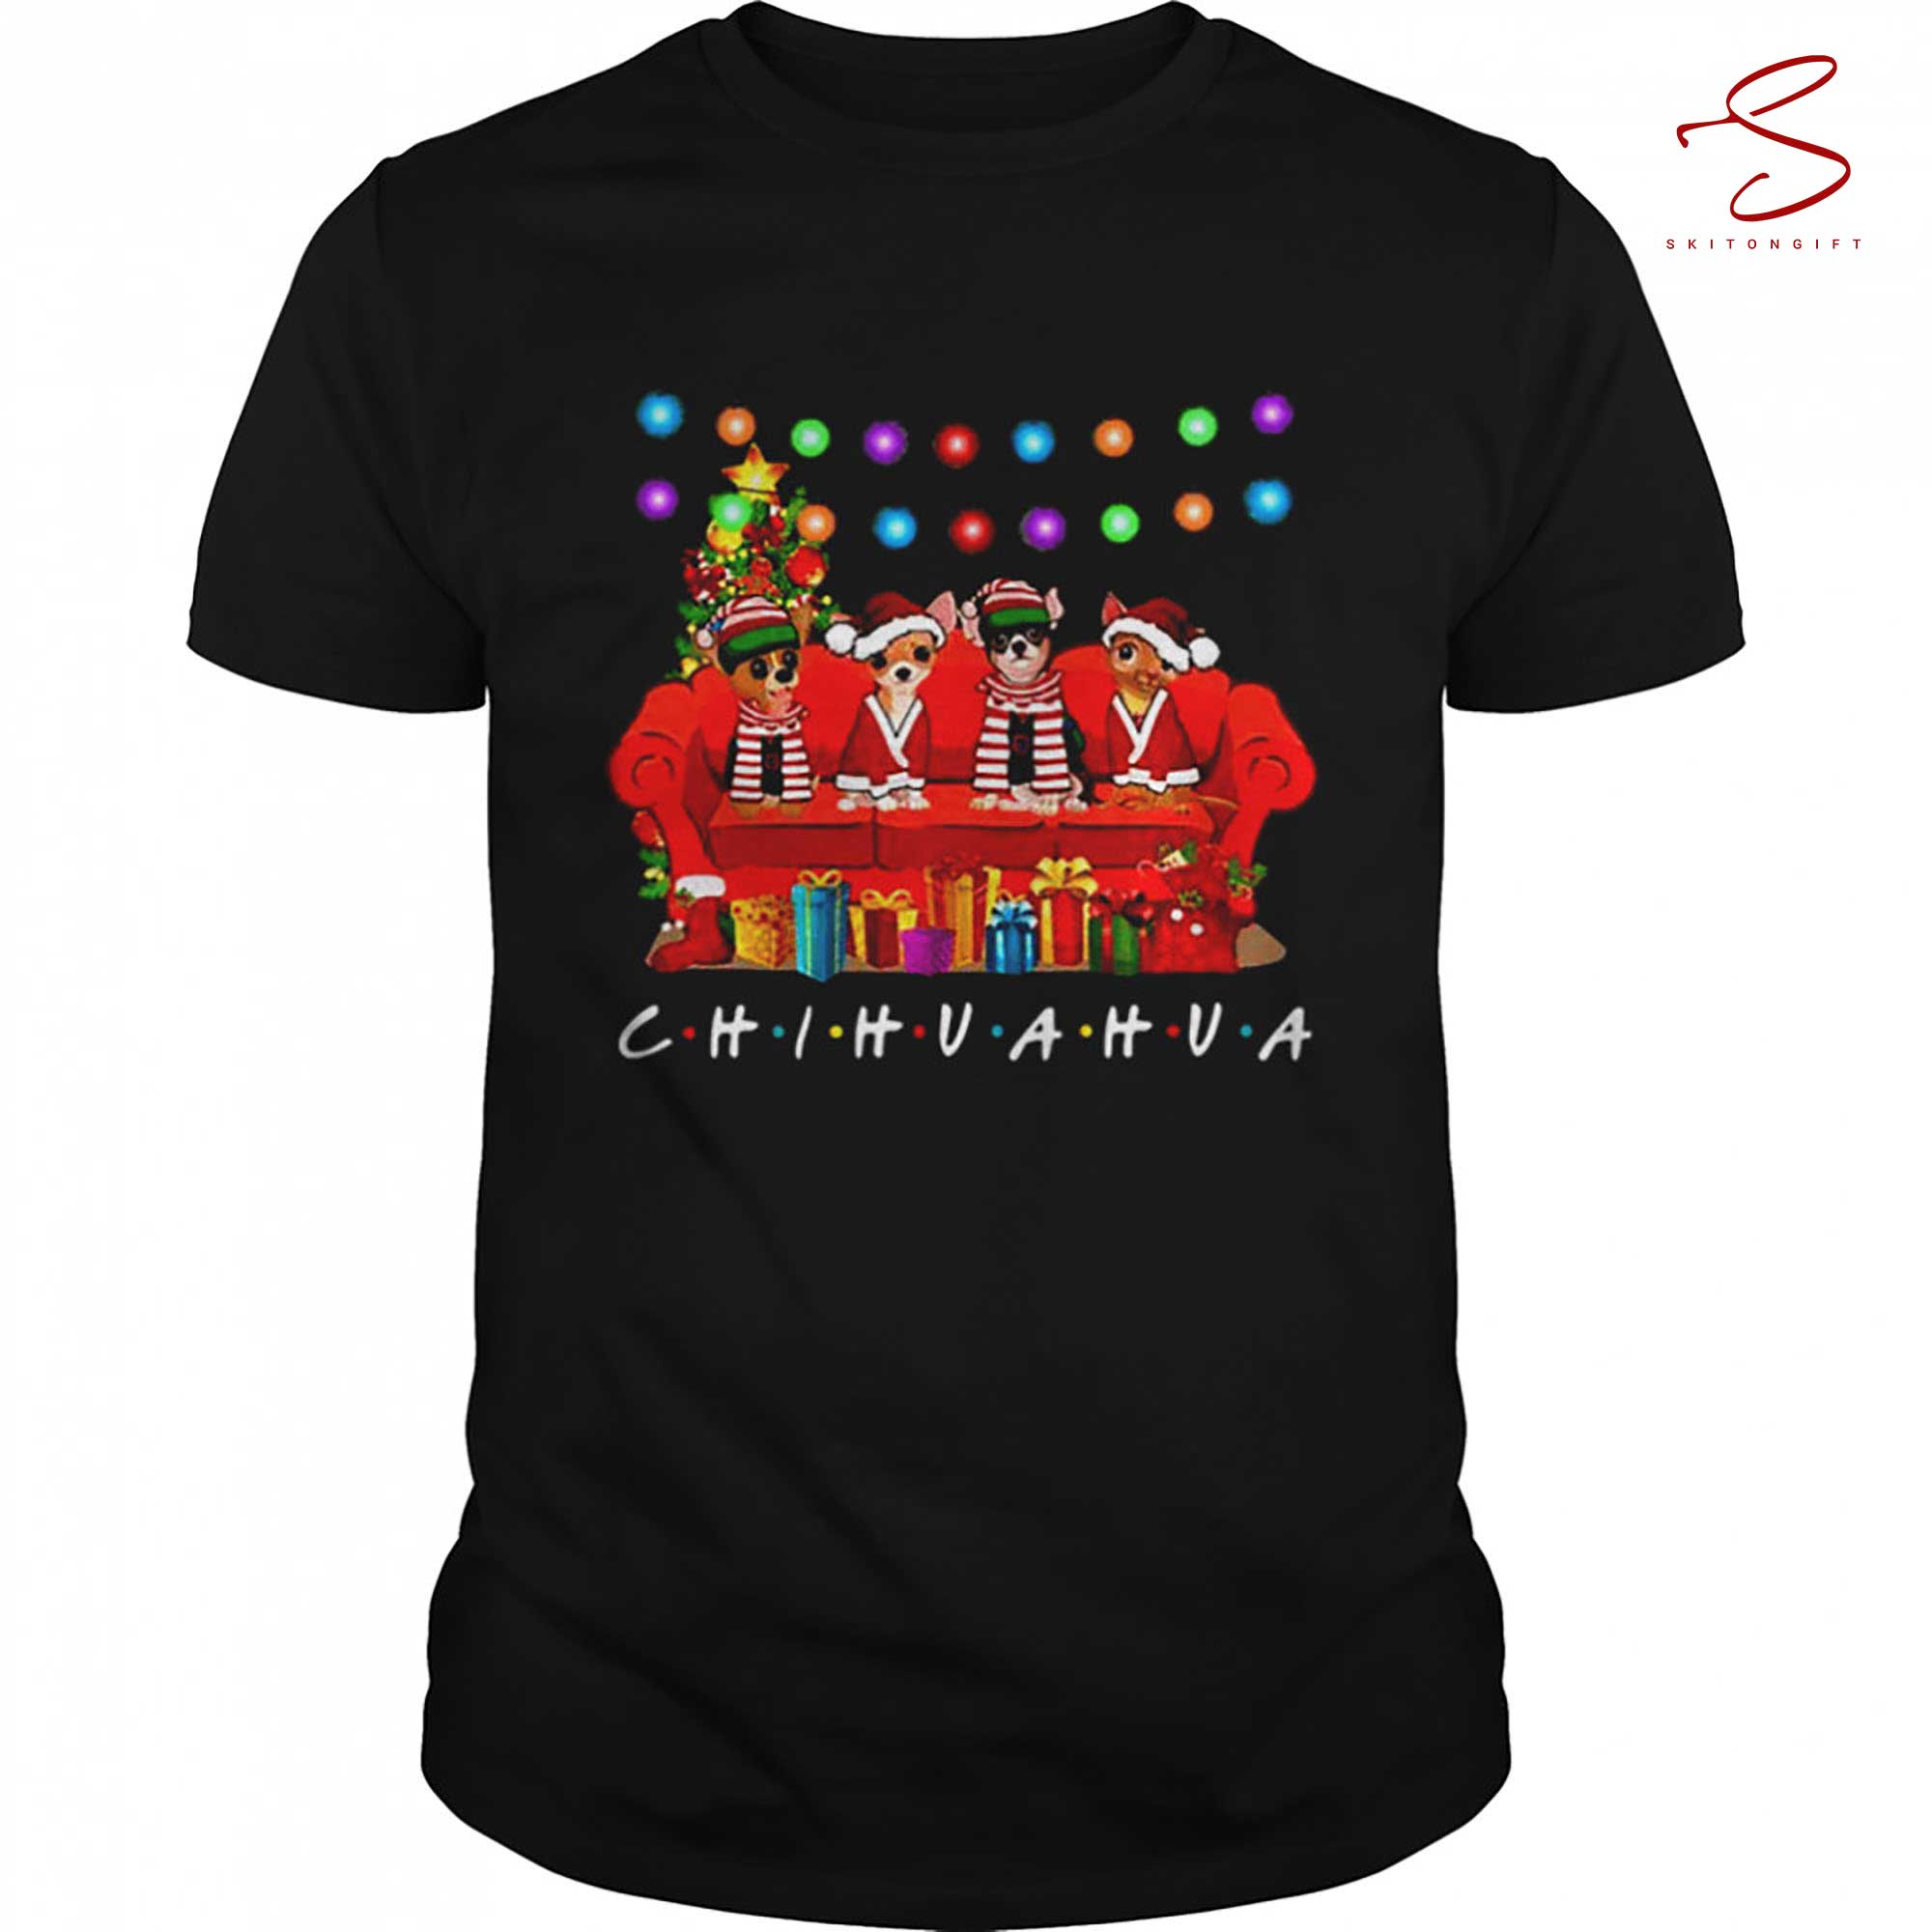 Skitongift Animated Merry Christmas T Shirt